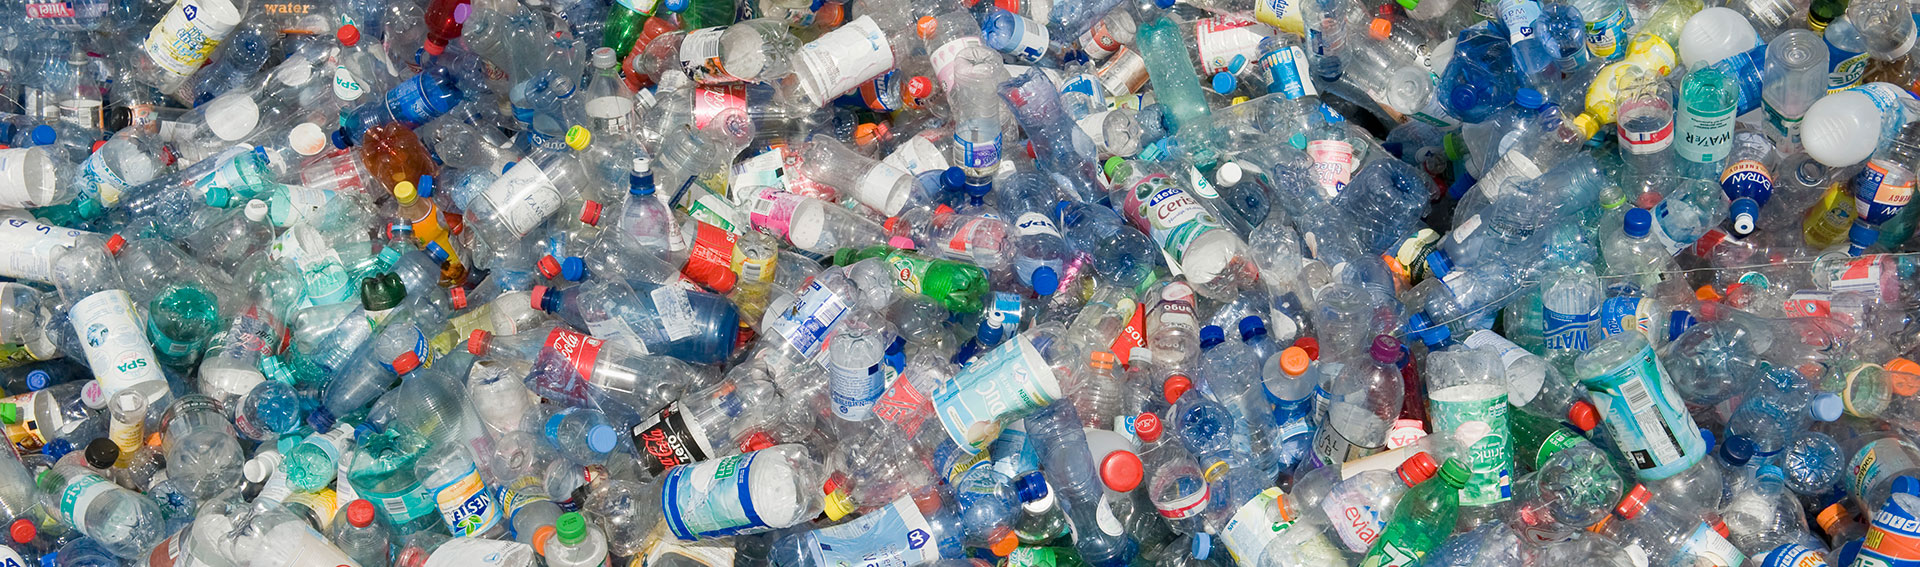 Le monde est furieux. Que peuvent faire les investisseurs en matière de pollution plastique?